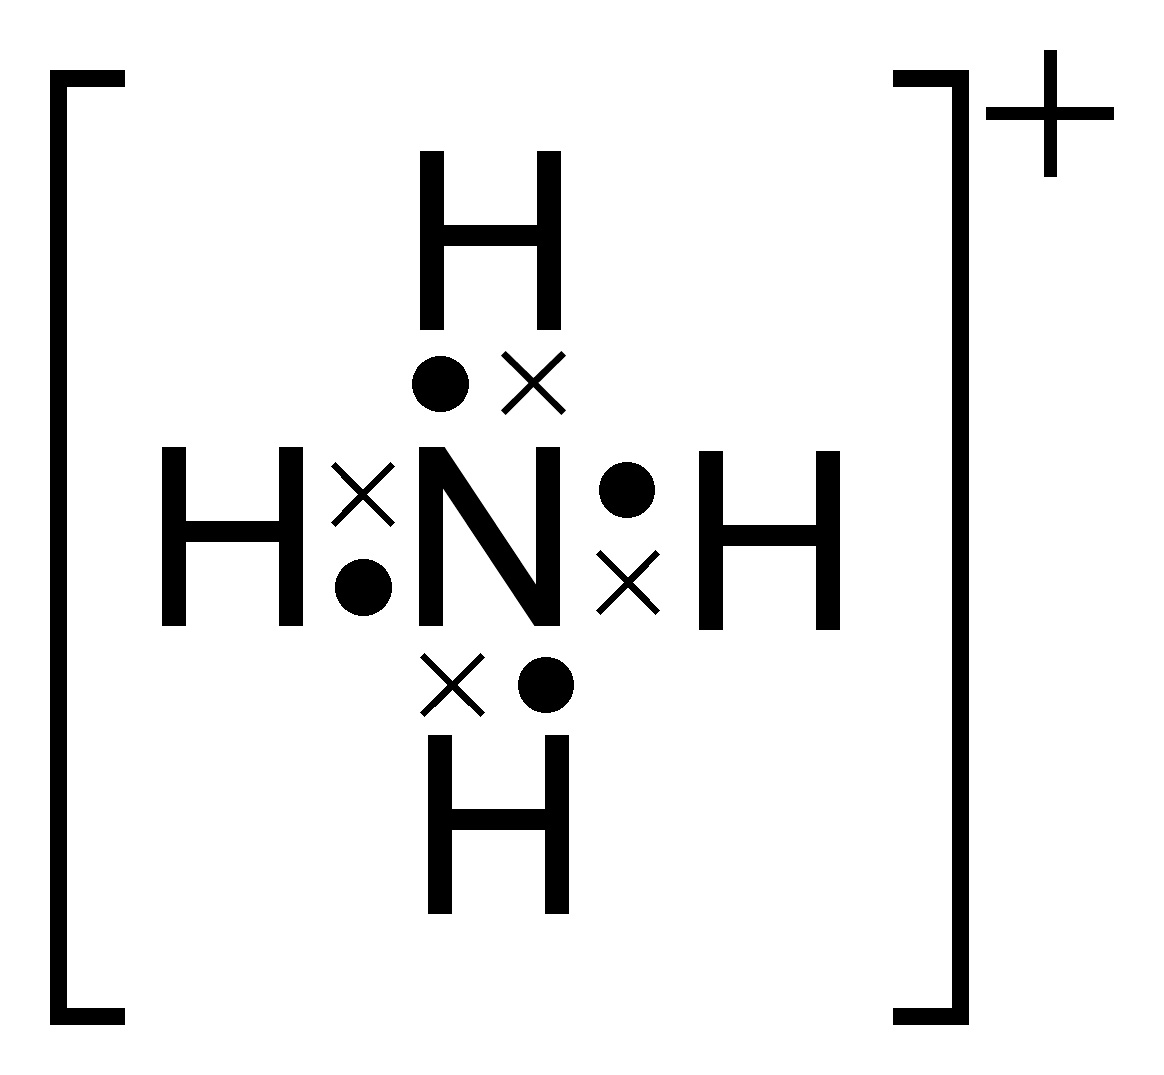 electron dot diagram of ammonium ion